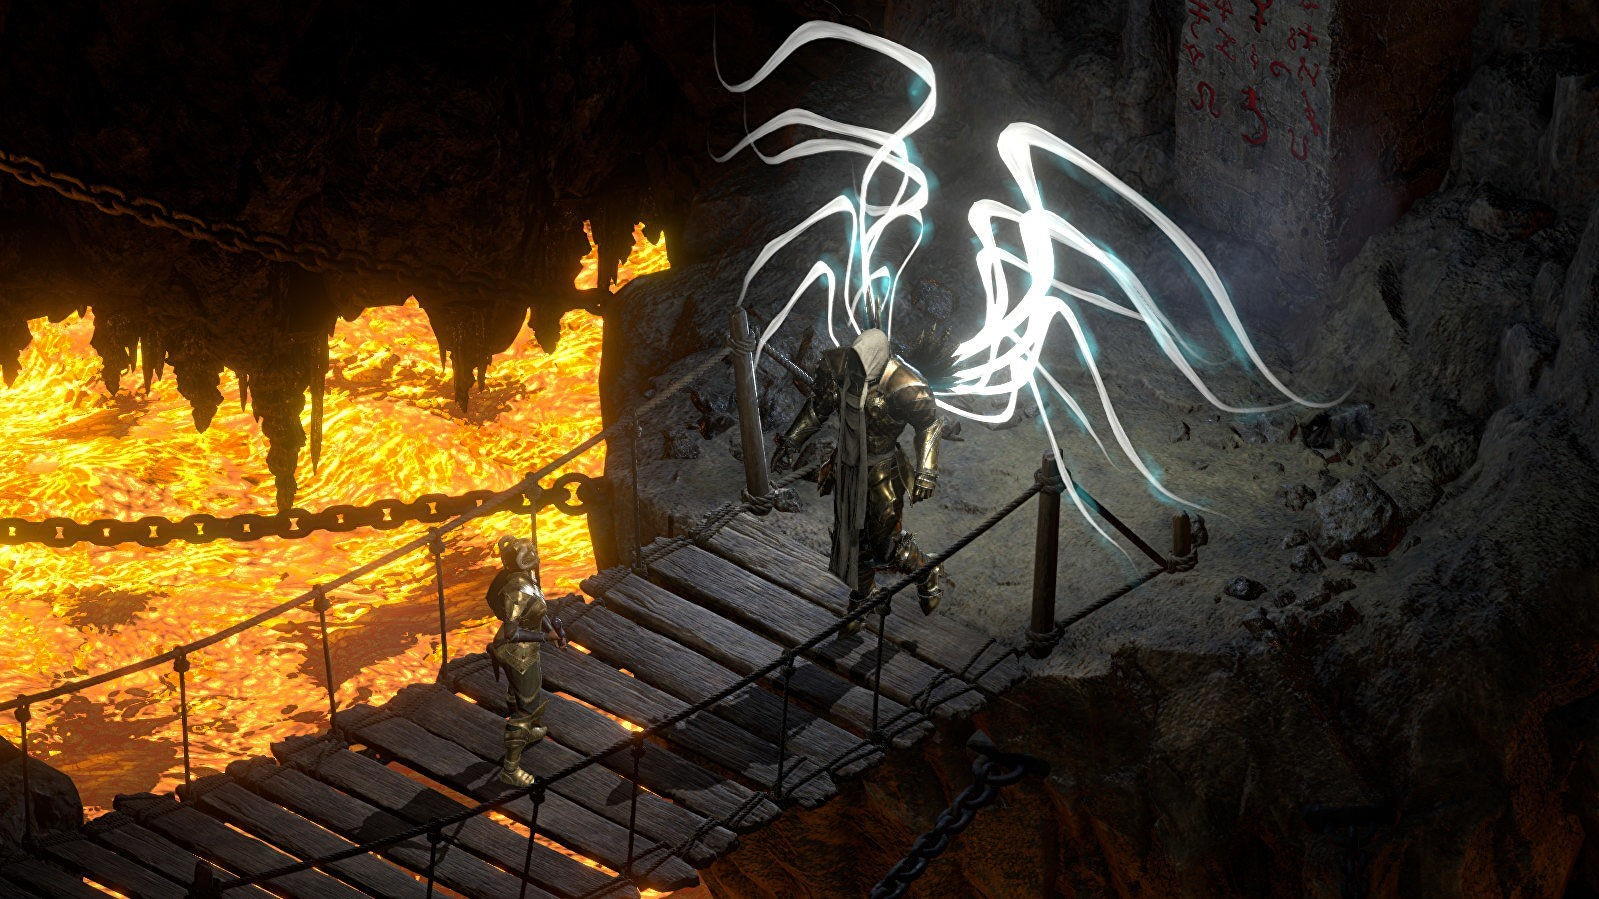 Obrazki dla Gracz zastrzelił kolegę. Przyczyną kłótnia o przedmiot w Diablo 2